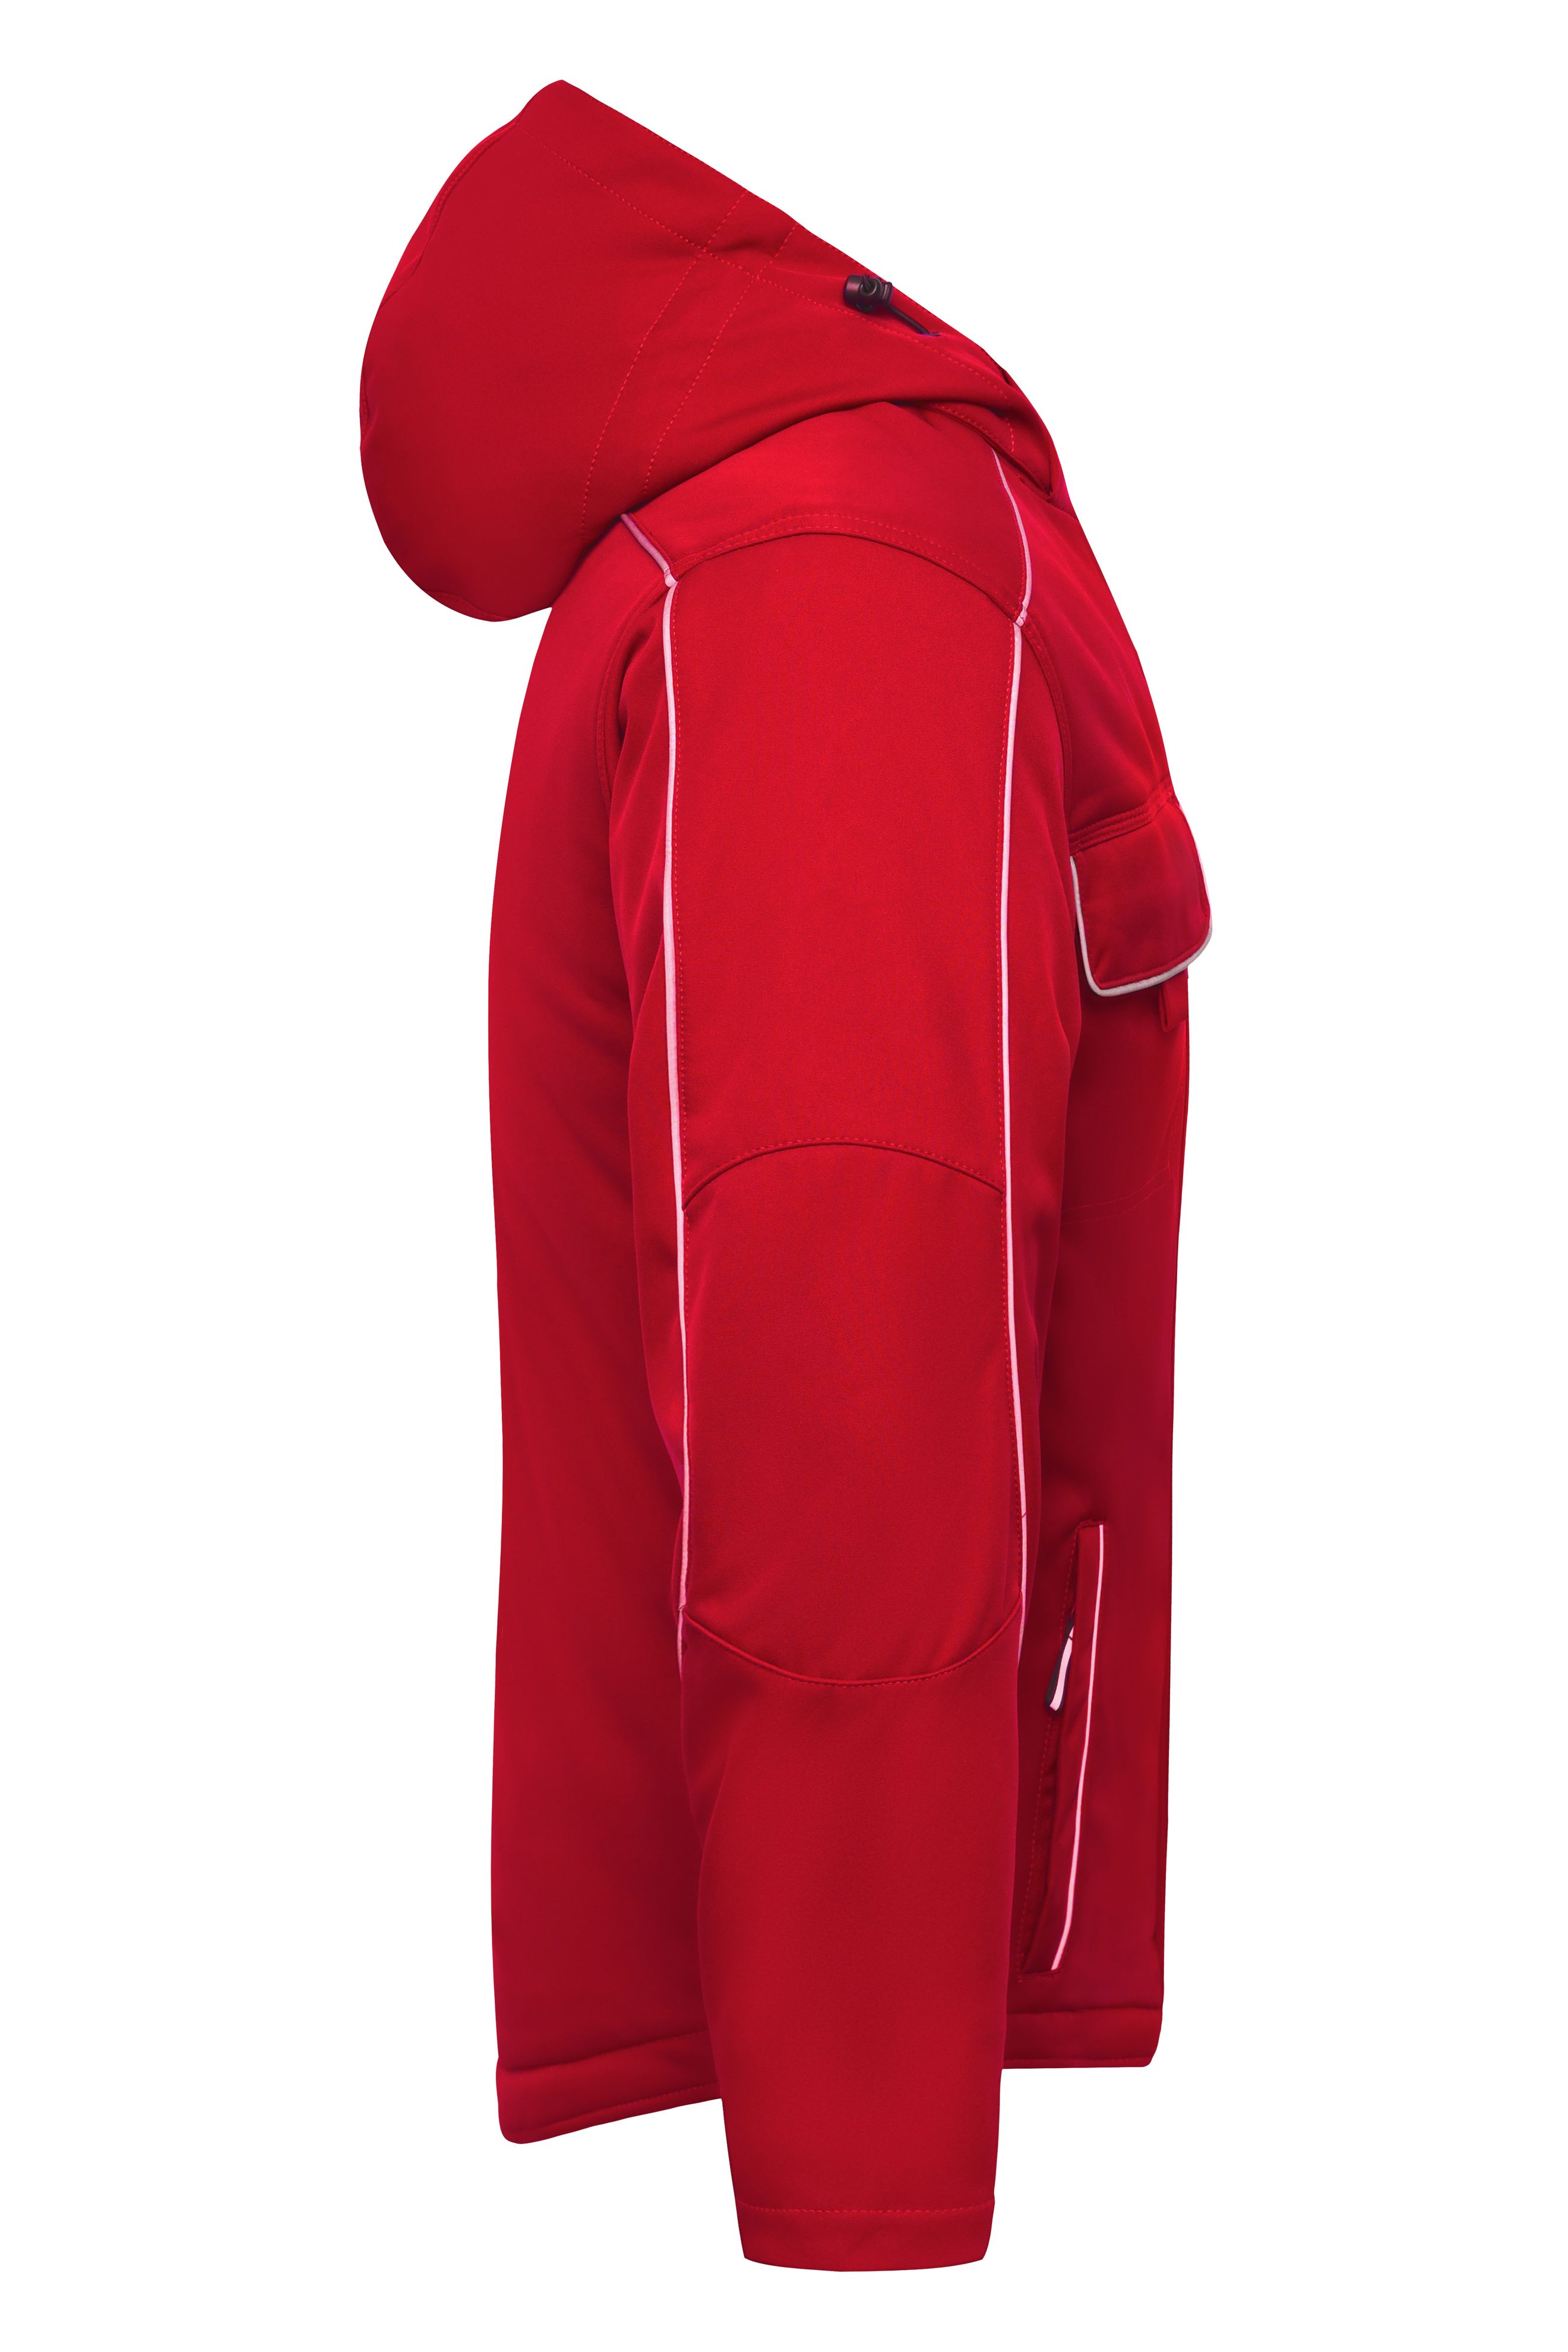 Workwear Softshell Padded Jacket - SOLID - JN886 Professionelle Softshelljacke mit warmem Innenfutter und hochwertigen Details im cleanen Look